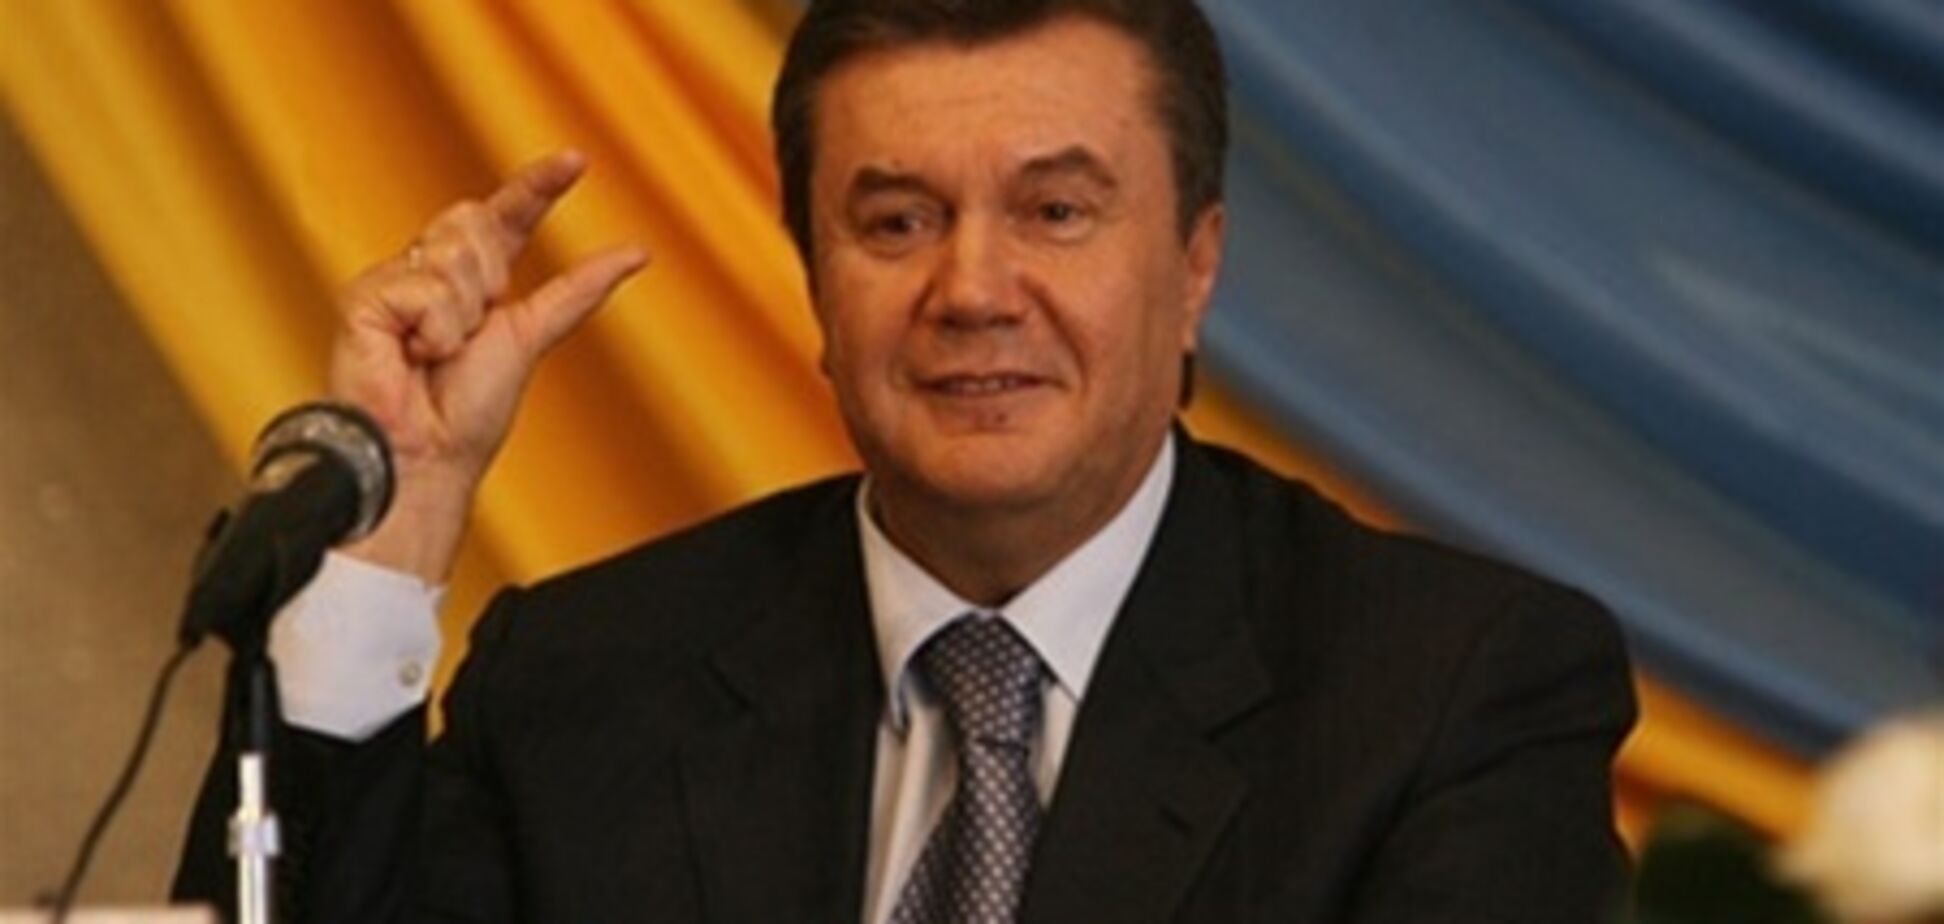 Діти допомогли Януковичу посадити ялинку